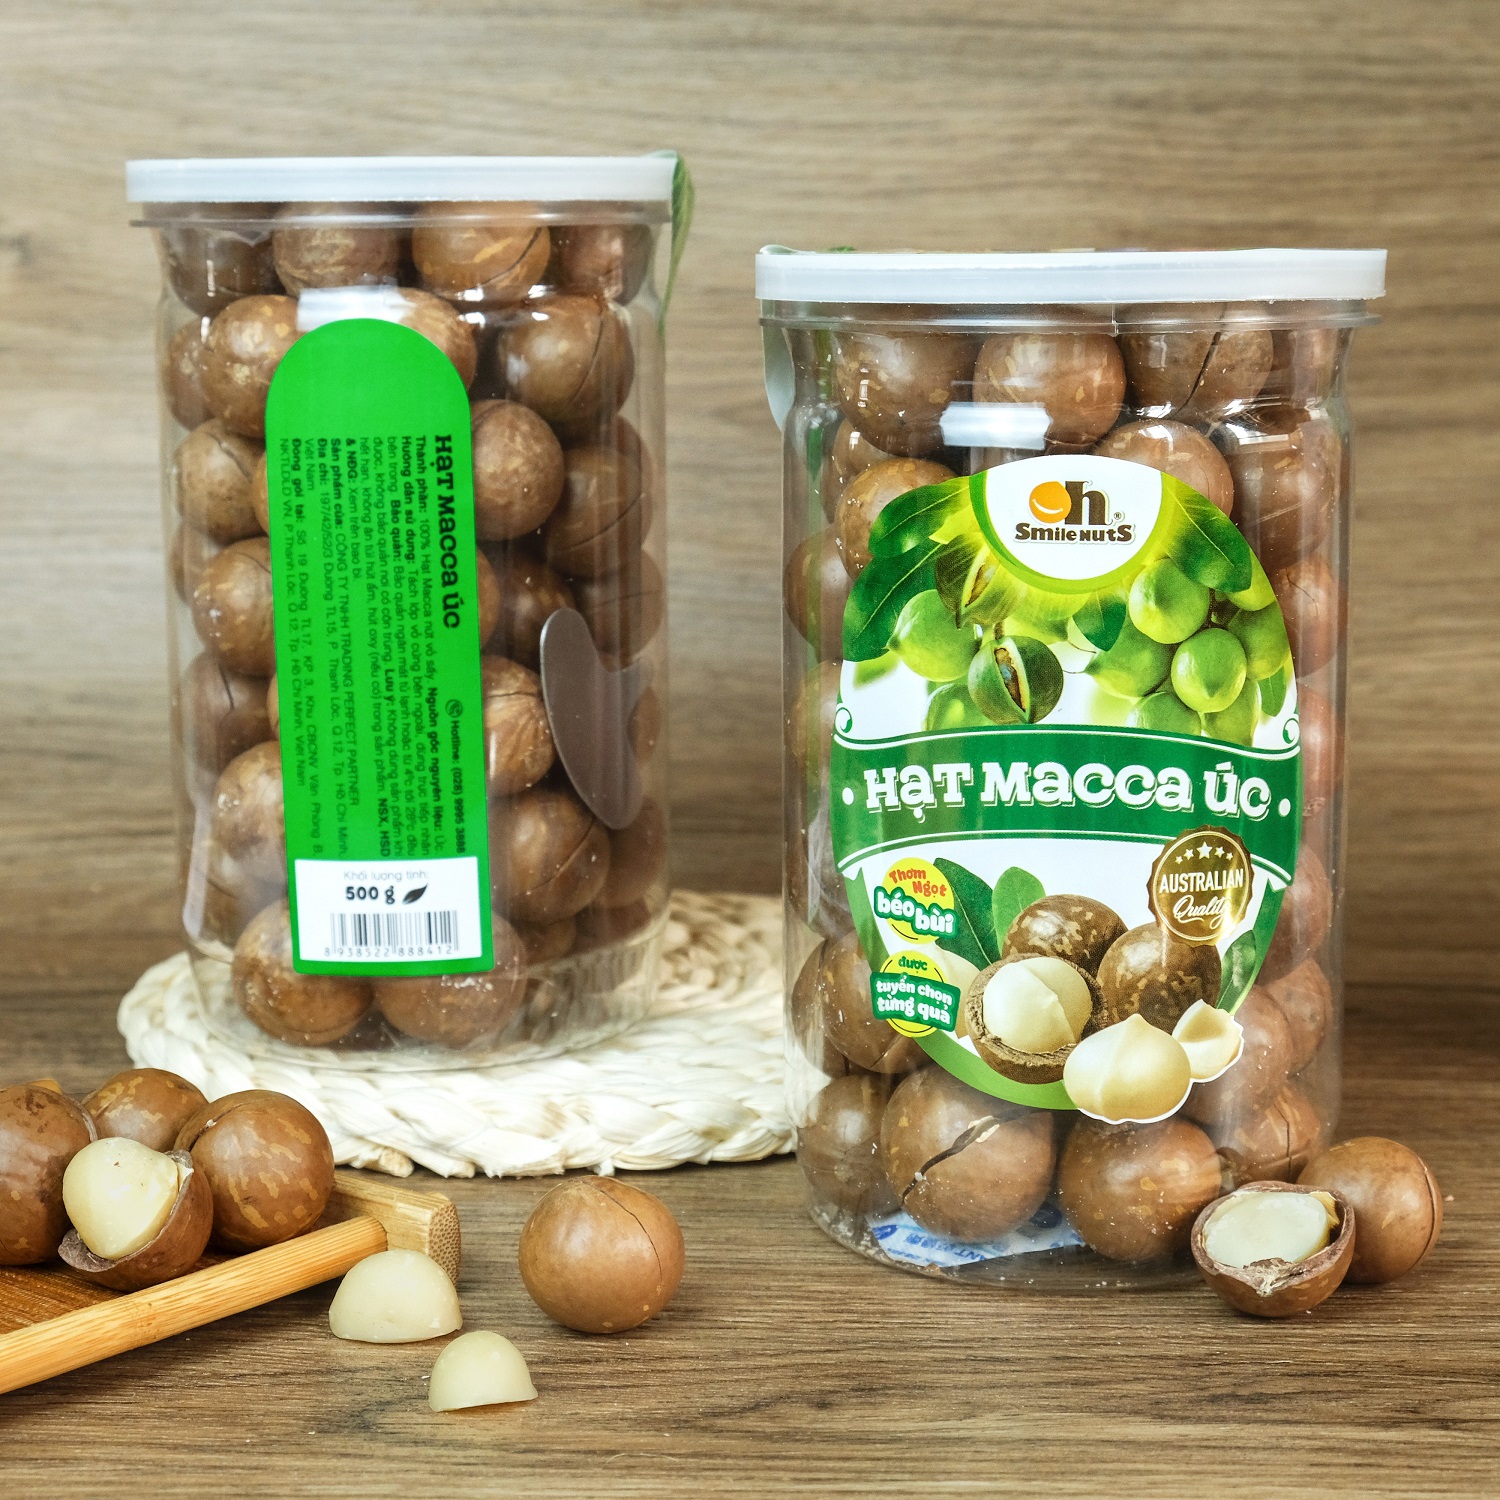 Hạt macca Úc nứt vỏ Smile Nuts hộp 500g - Kèm dụng cụ tách vỏ